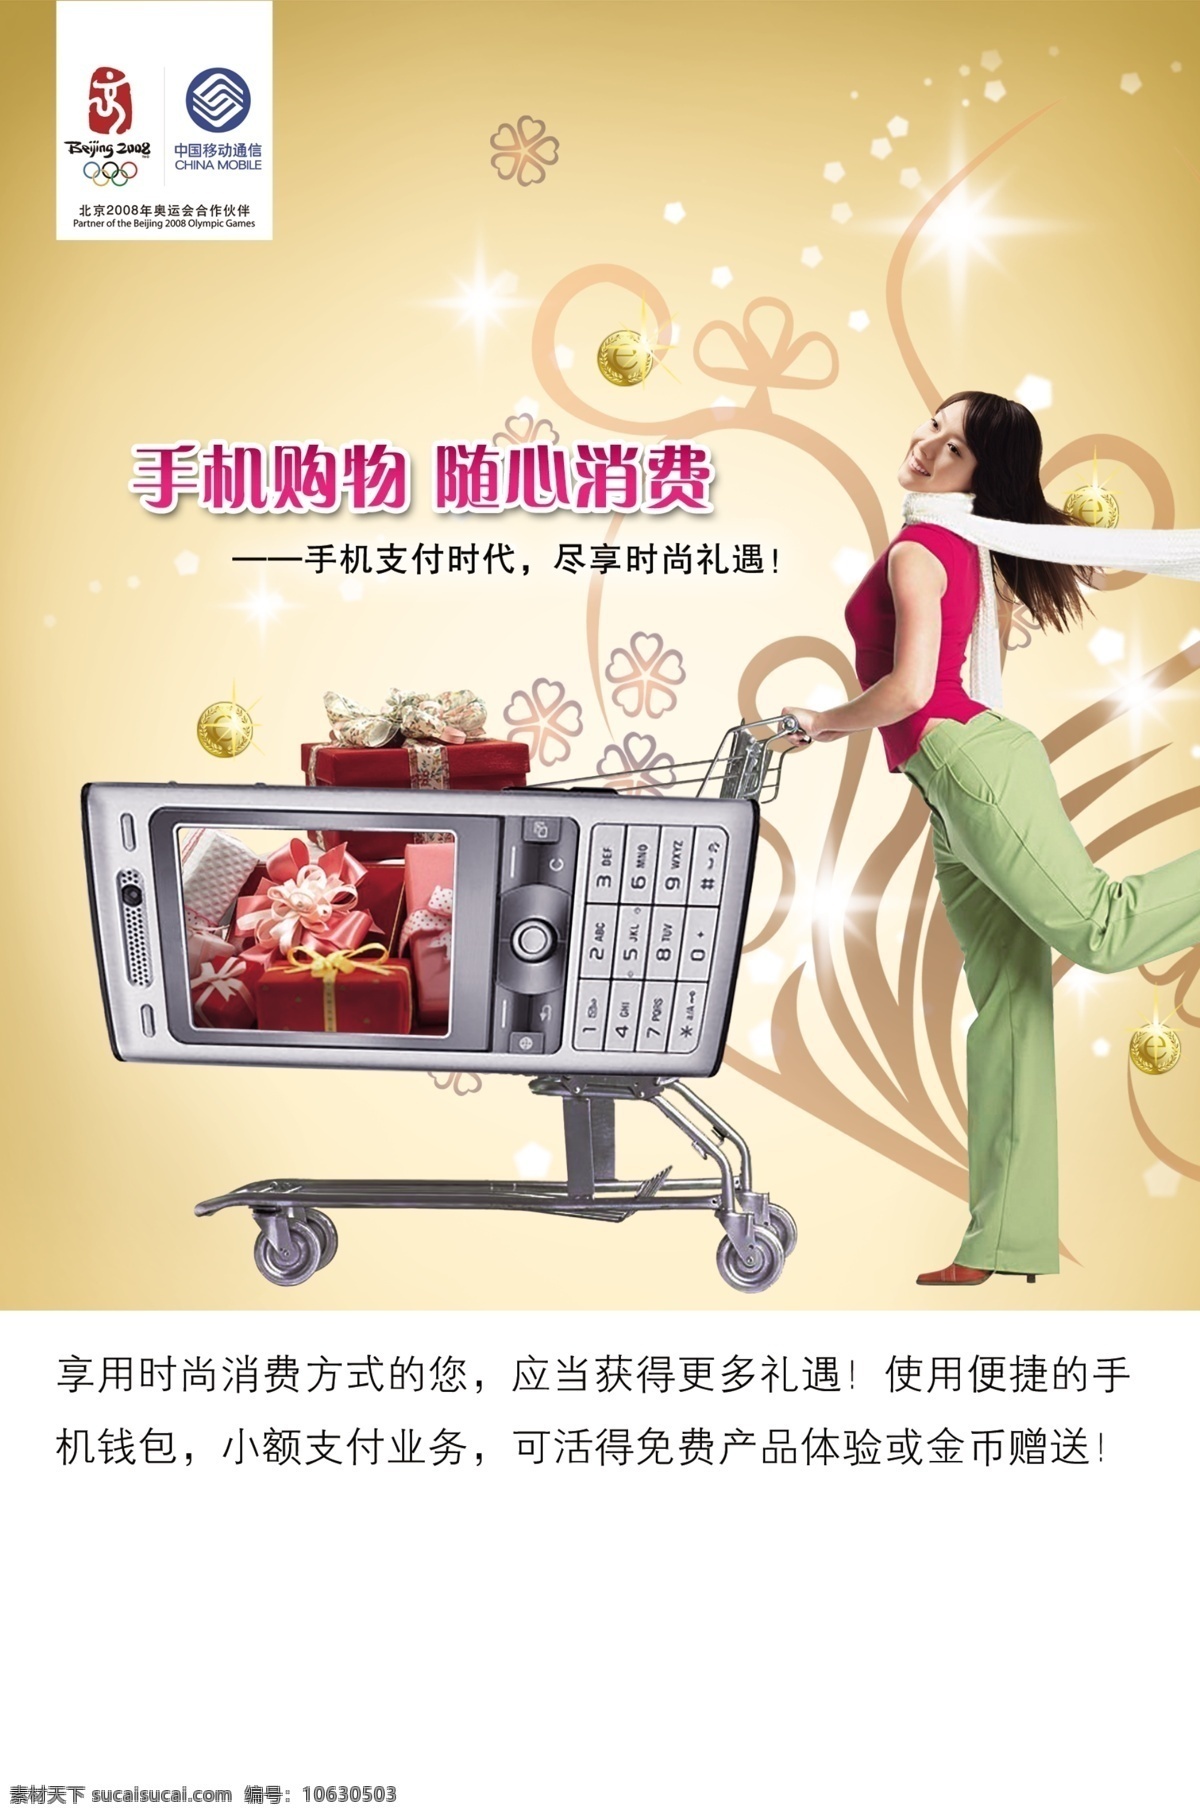 分层 psd格式 购物车 美女 手机 源文件 中国移动广告 移动 购物 海报 中国移动 其他海报设计